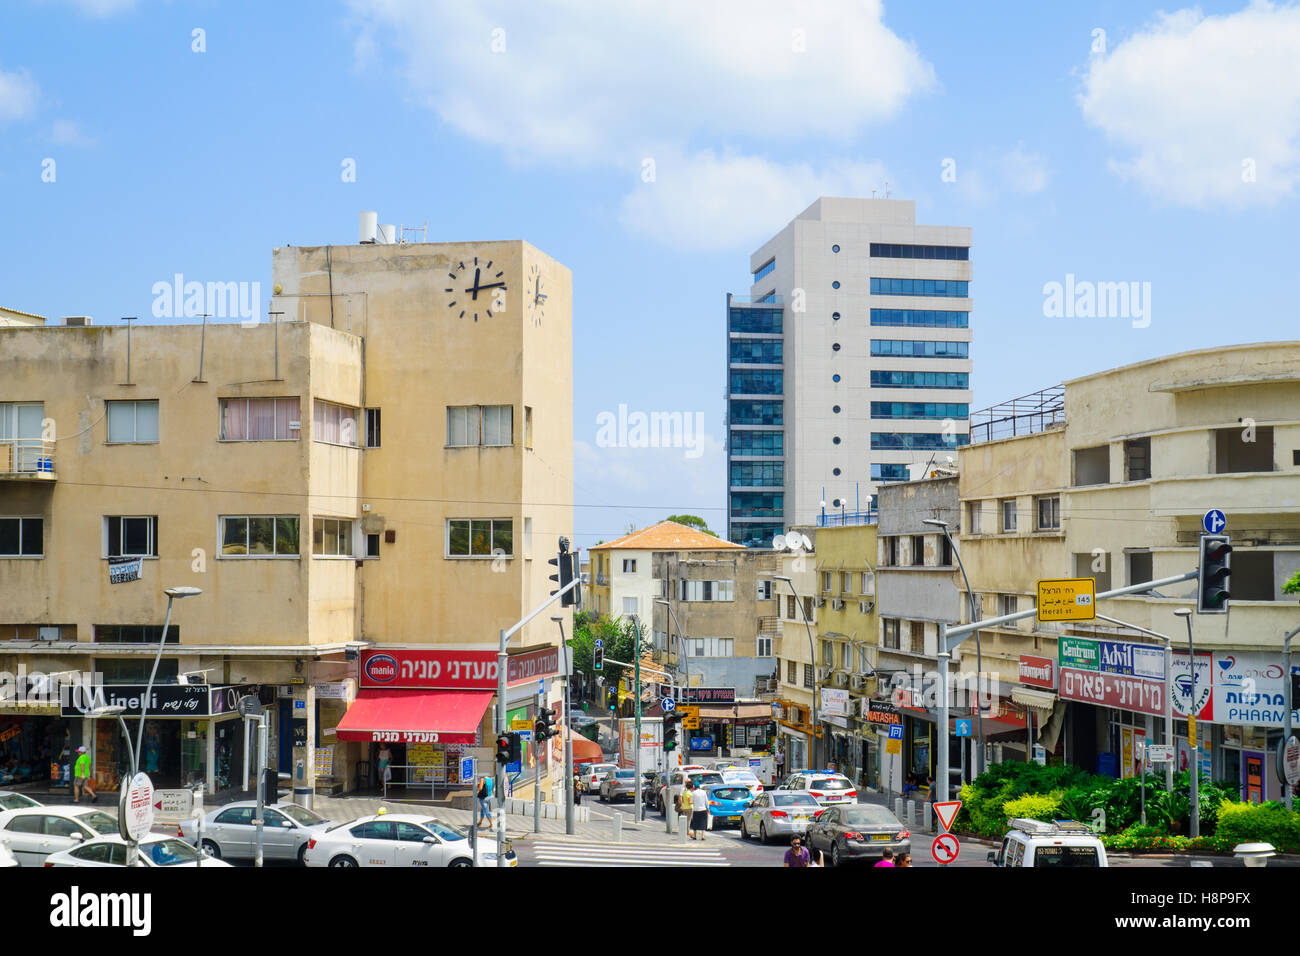 Haïfa, Israël - 18 août 2016 : Scène de Hadar HaCarmel, avec le Beit Hashaon (Maison de l'horloge), les entreprises locales, Banque D'Images